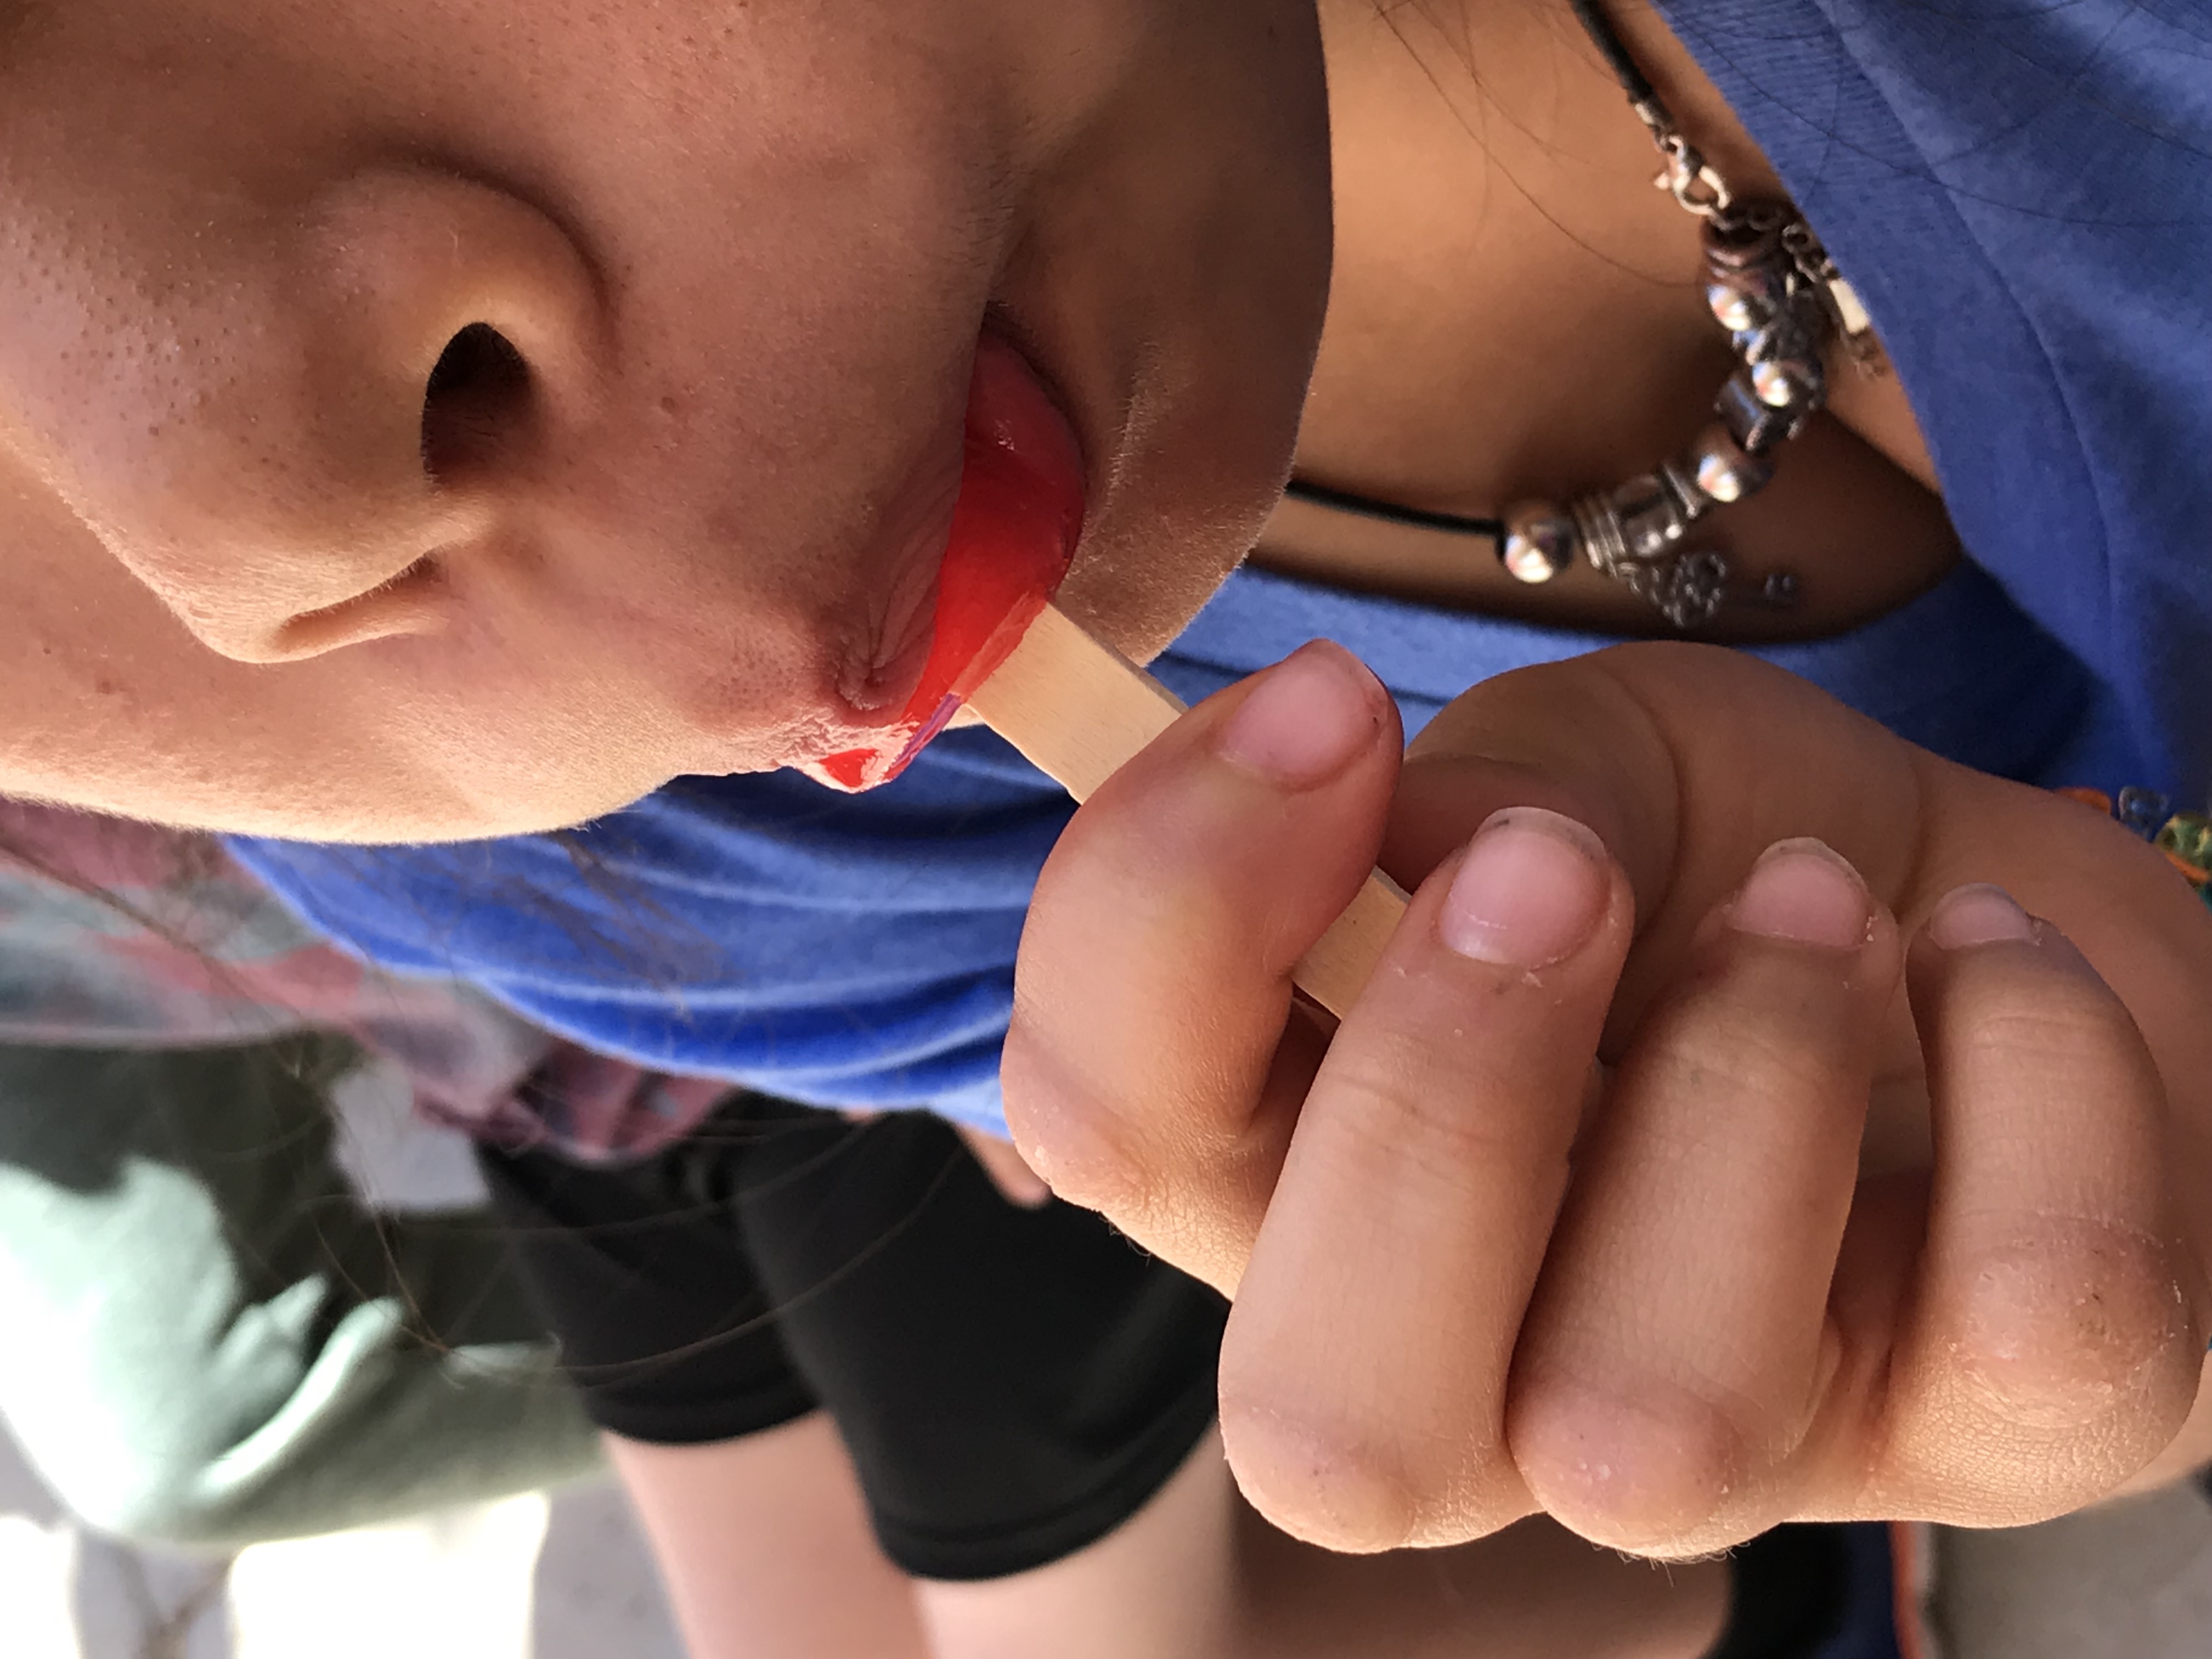 Kid eating popsicle